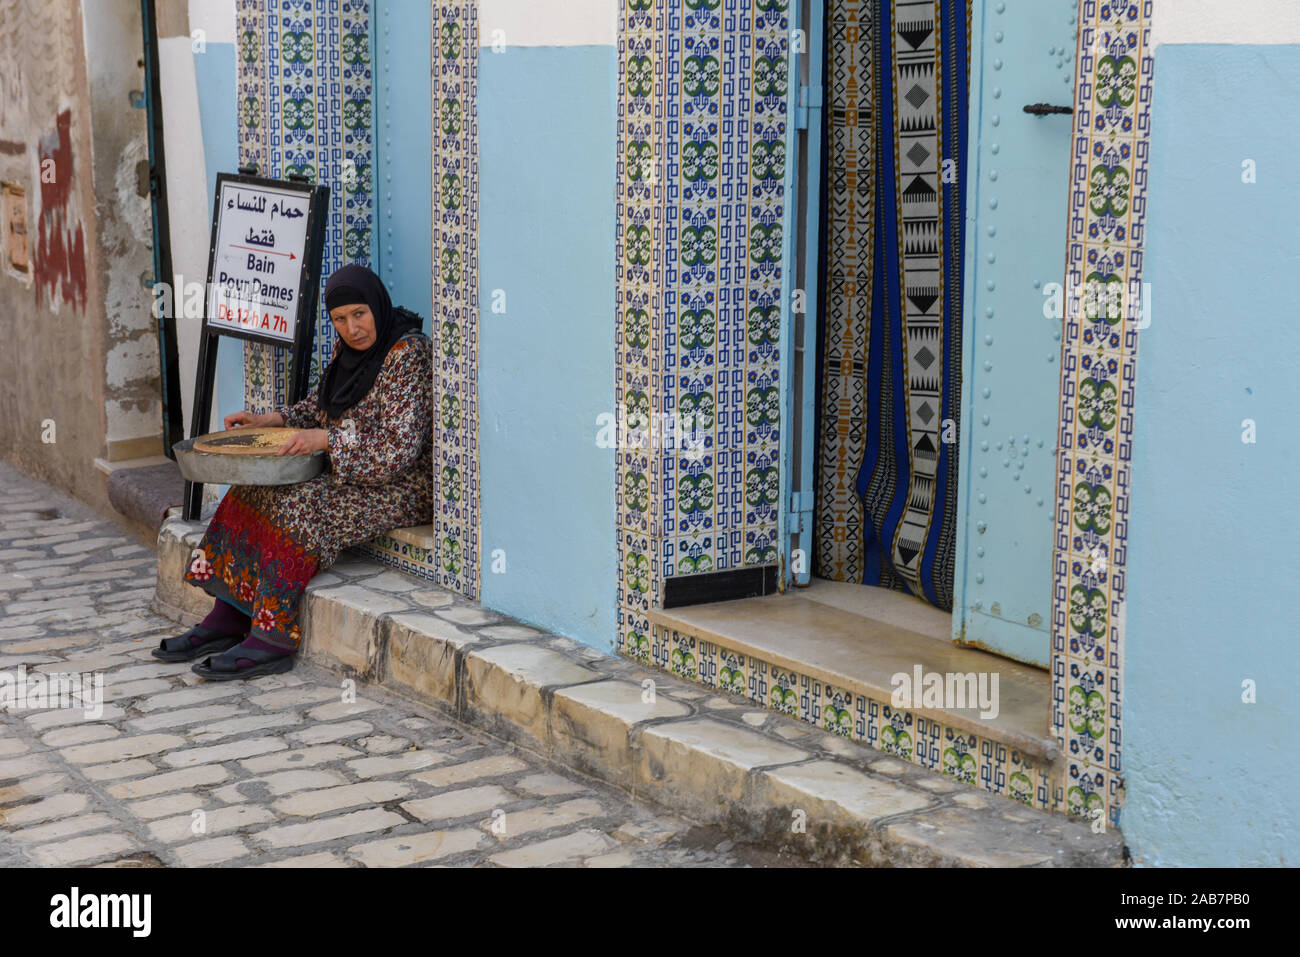 Sousse, Tunisie - 7 novembre 2019 - femme assise en face d'un hammam à Sousse en Tunisie Banque D'Images